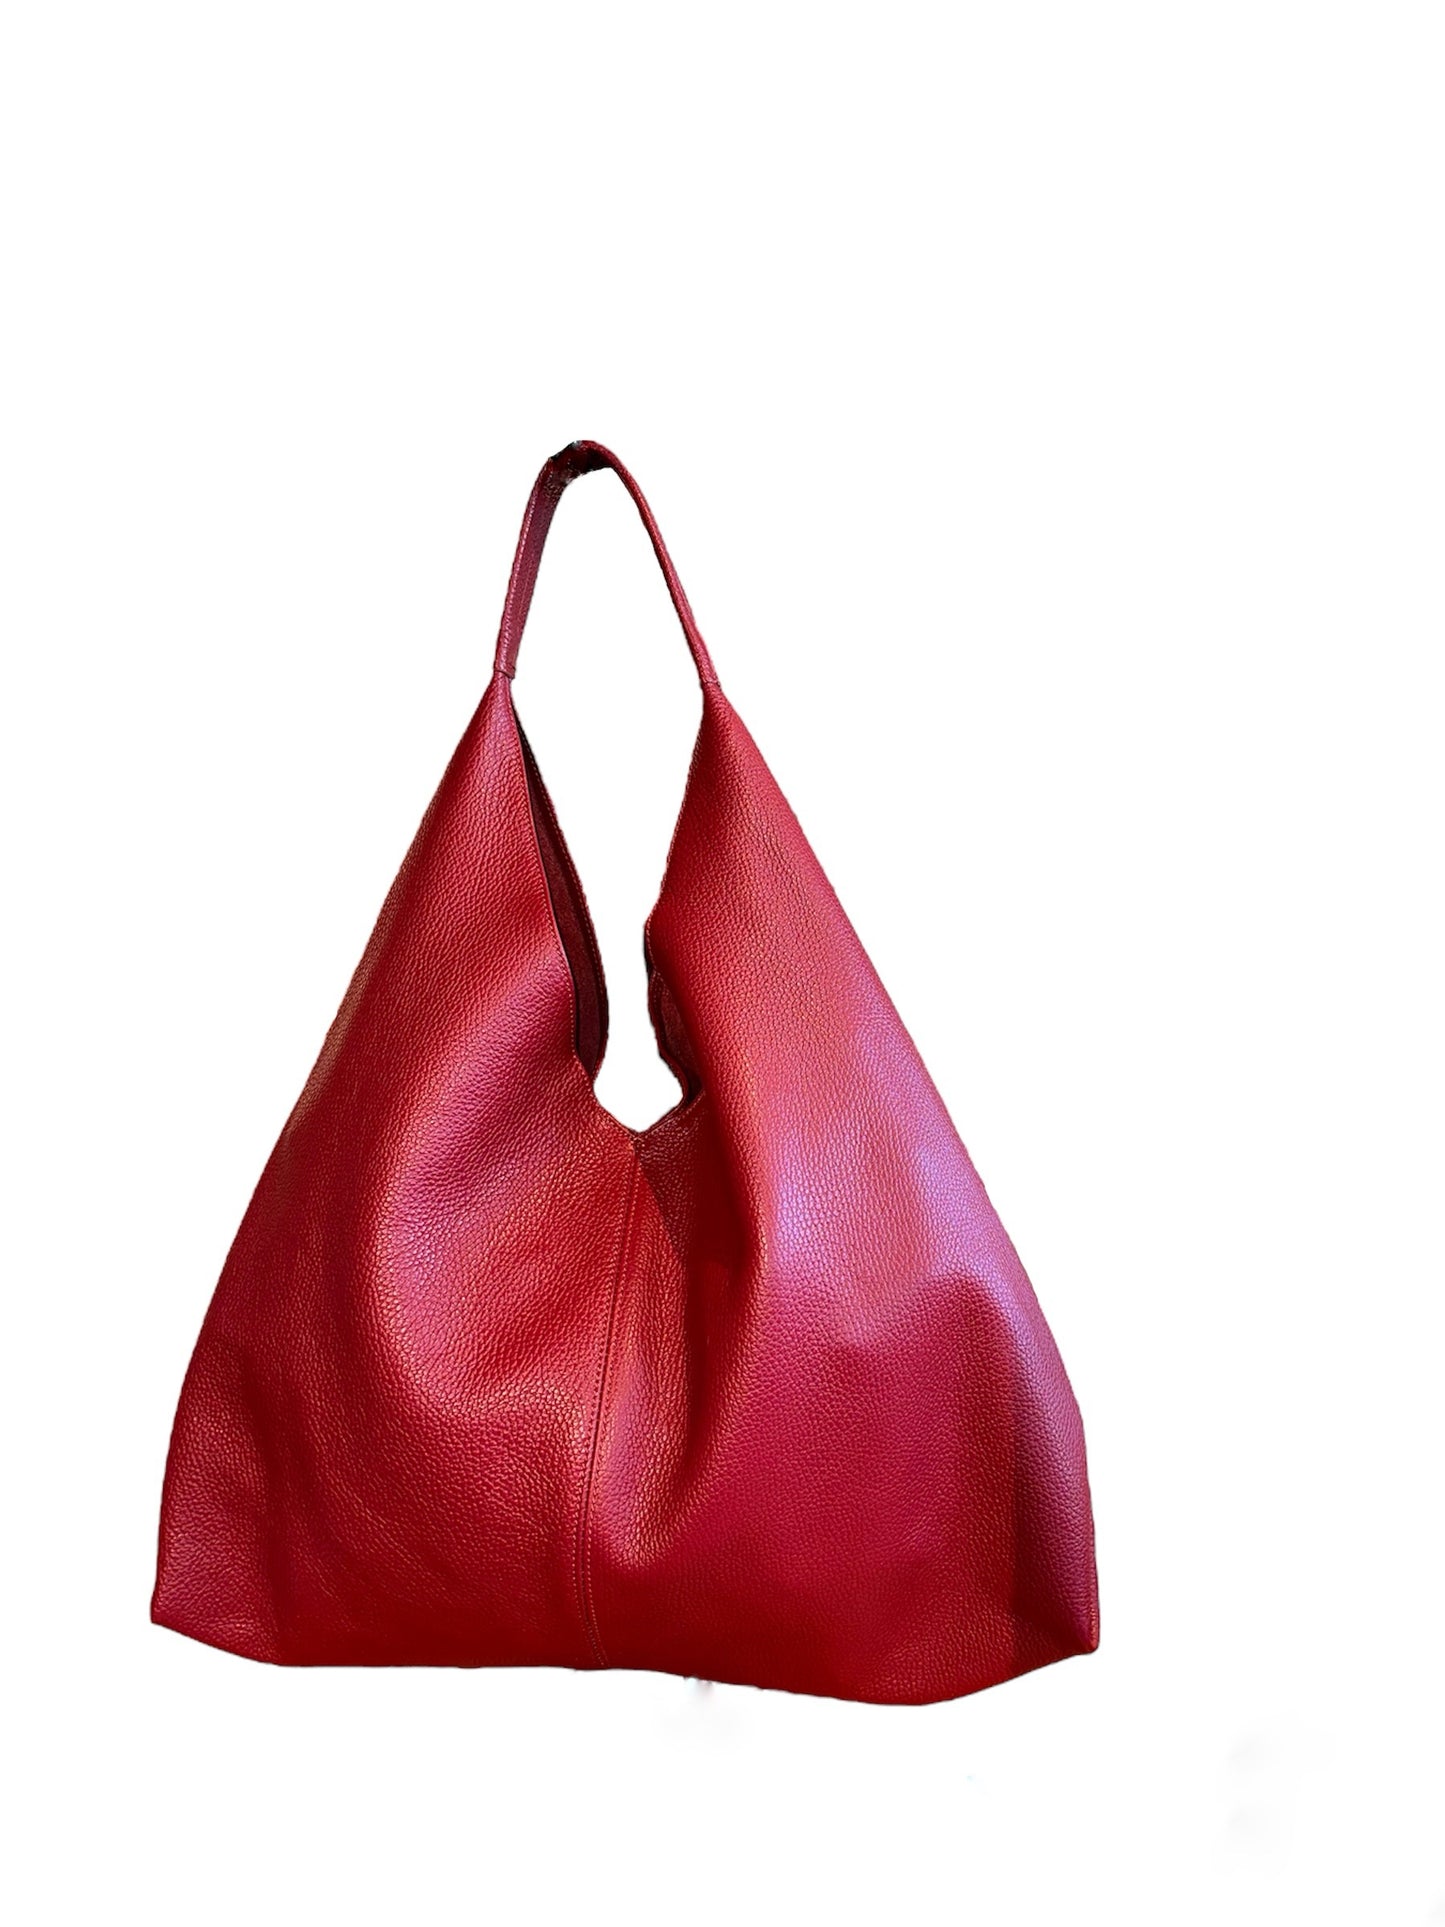 Shoulder Handbag - Extra Large Leather Bag